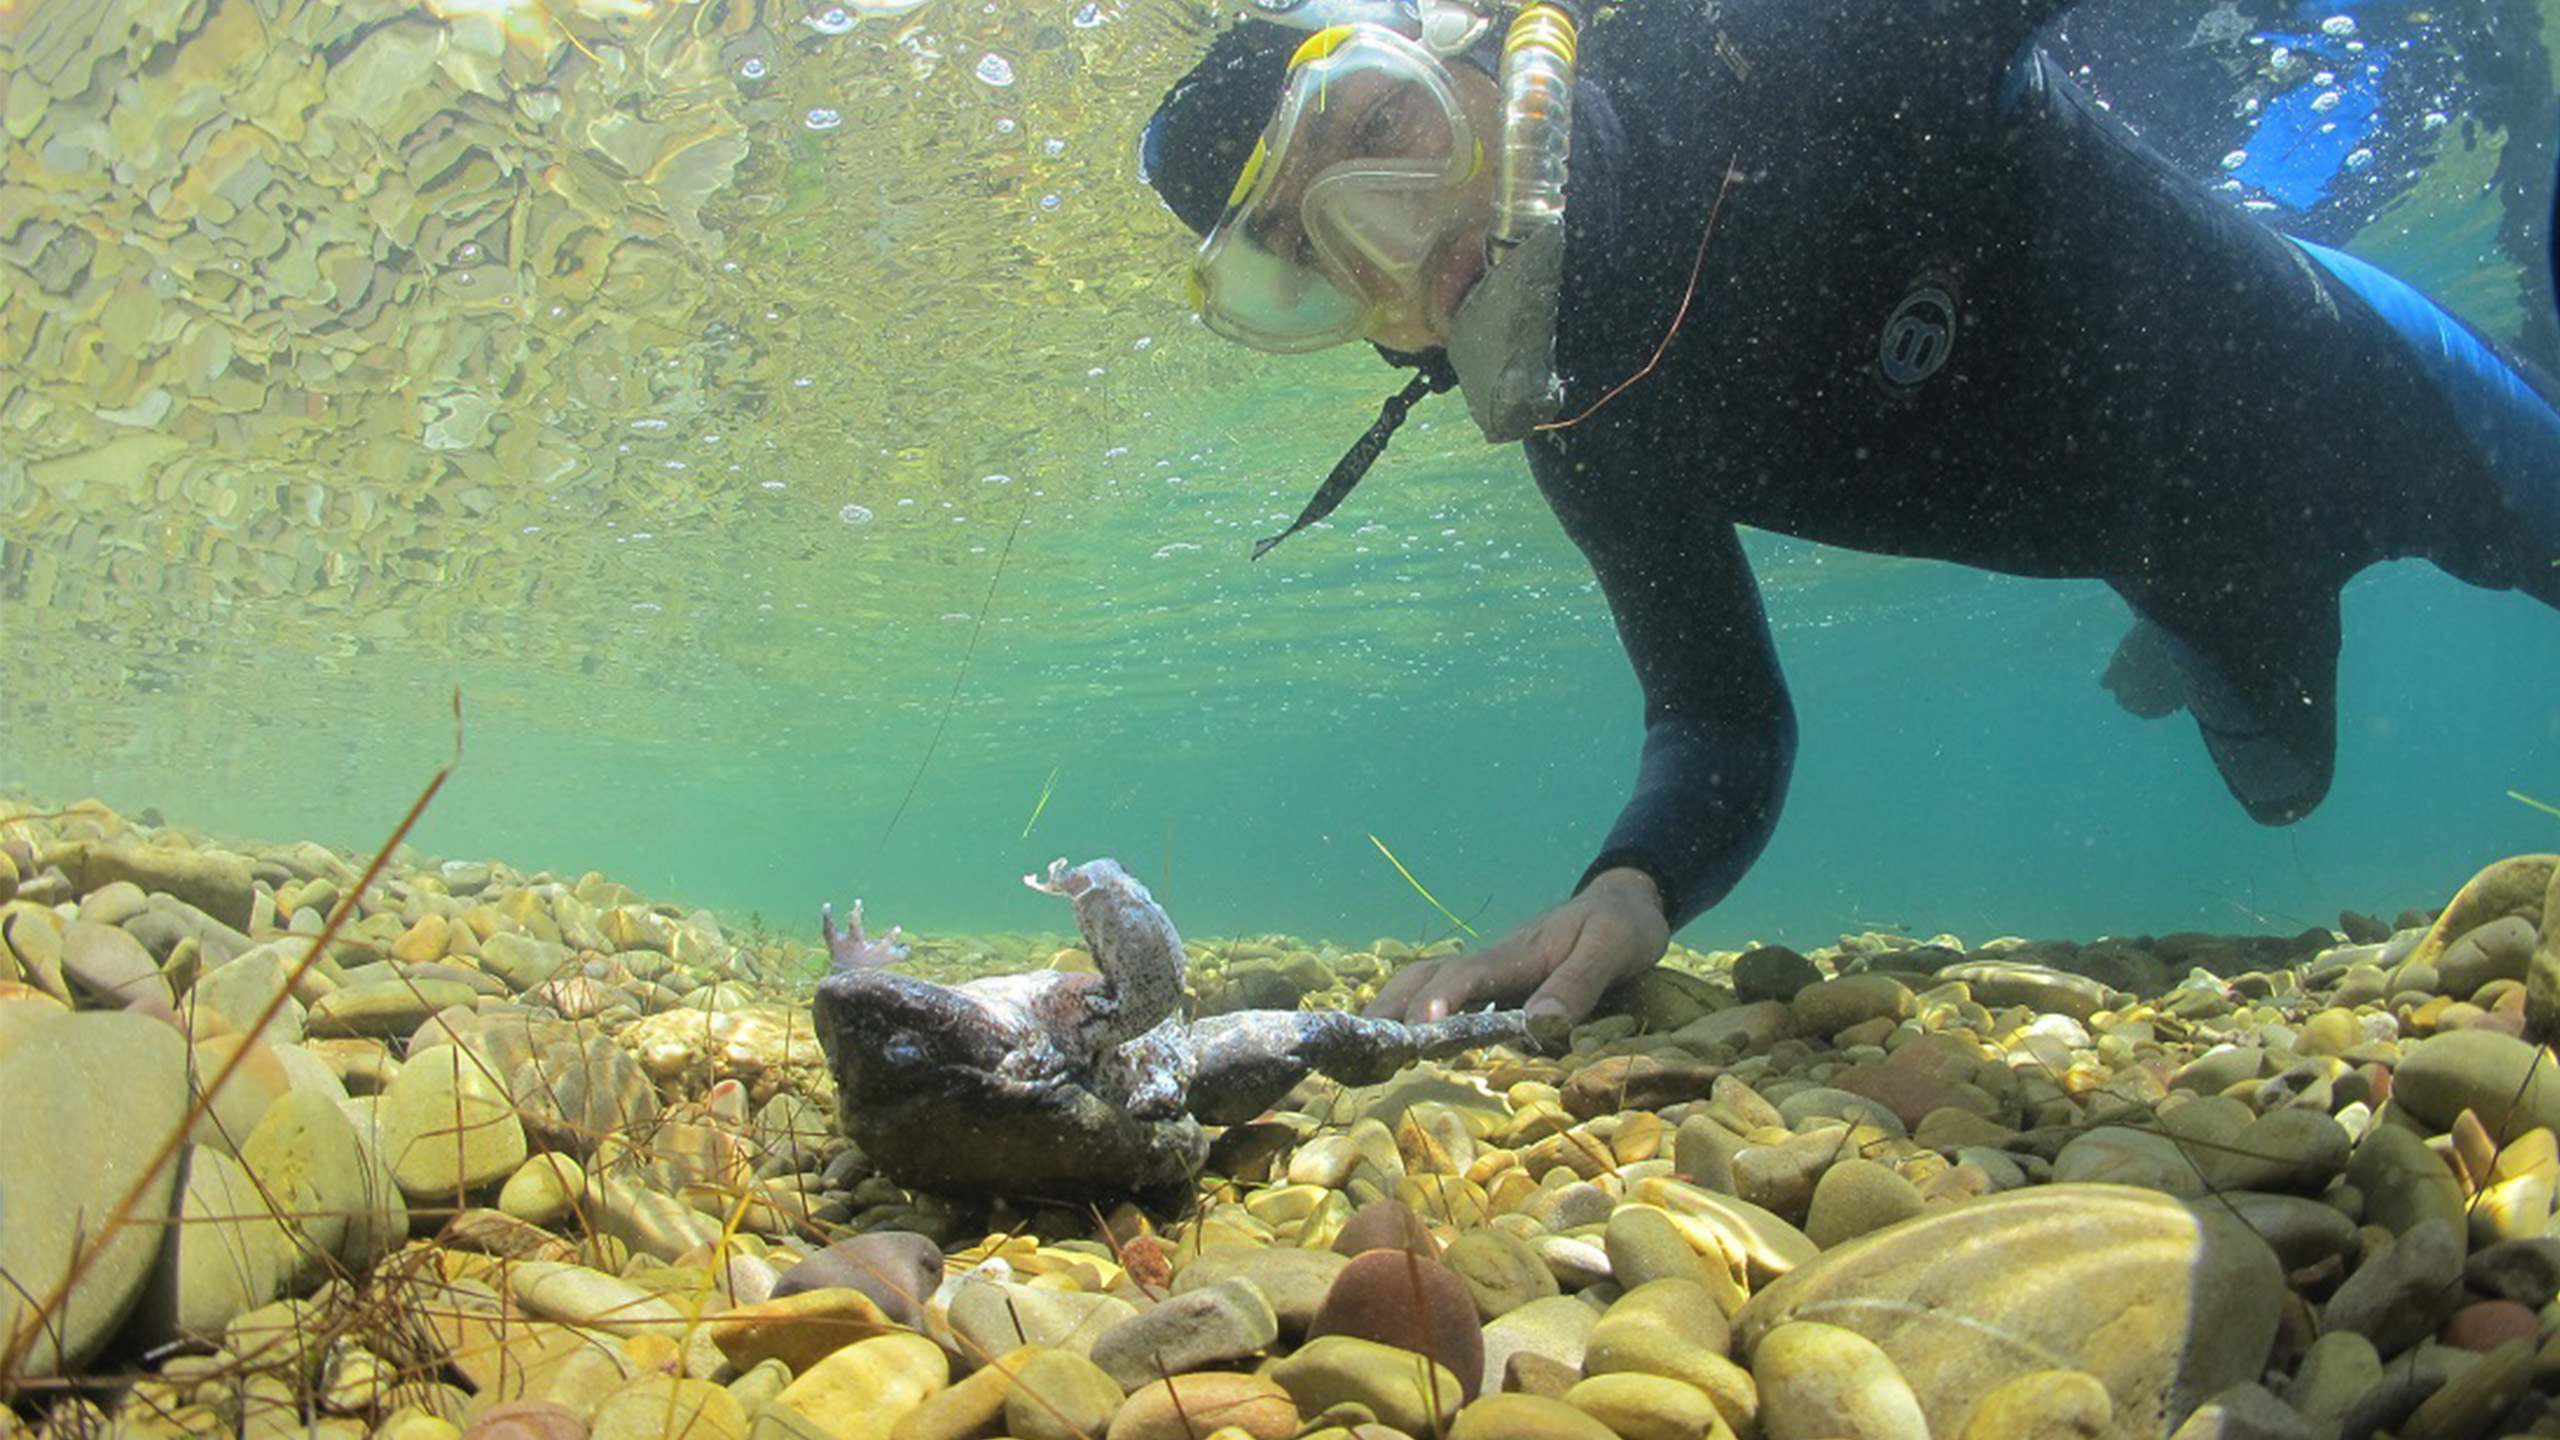 Unter Wasser dasselbe traurige Bild: Wo Cousteau einst quietschfidele Riesenfrösche fand, dümpeln heute Froschkadaver durch den stark belasteten See. | Arturo Muñoz-Saravia